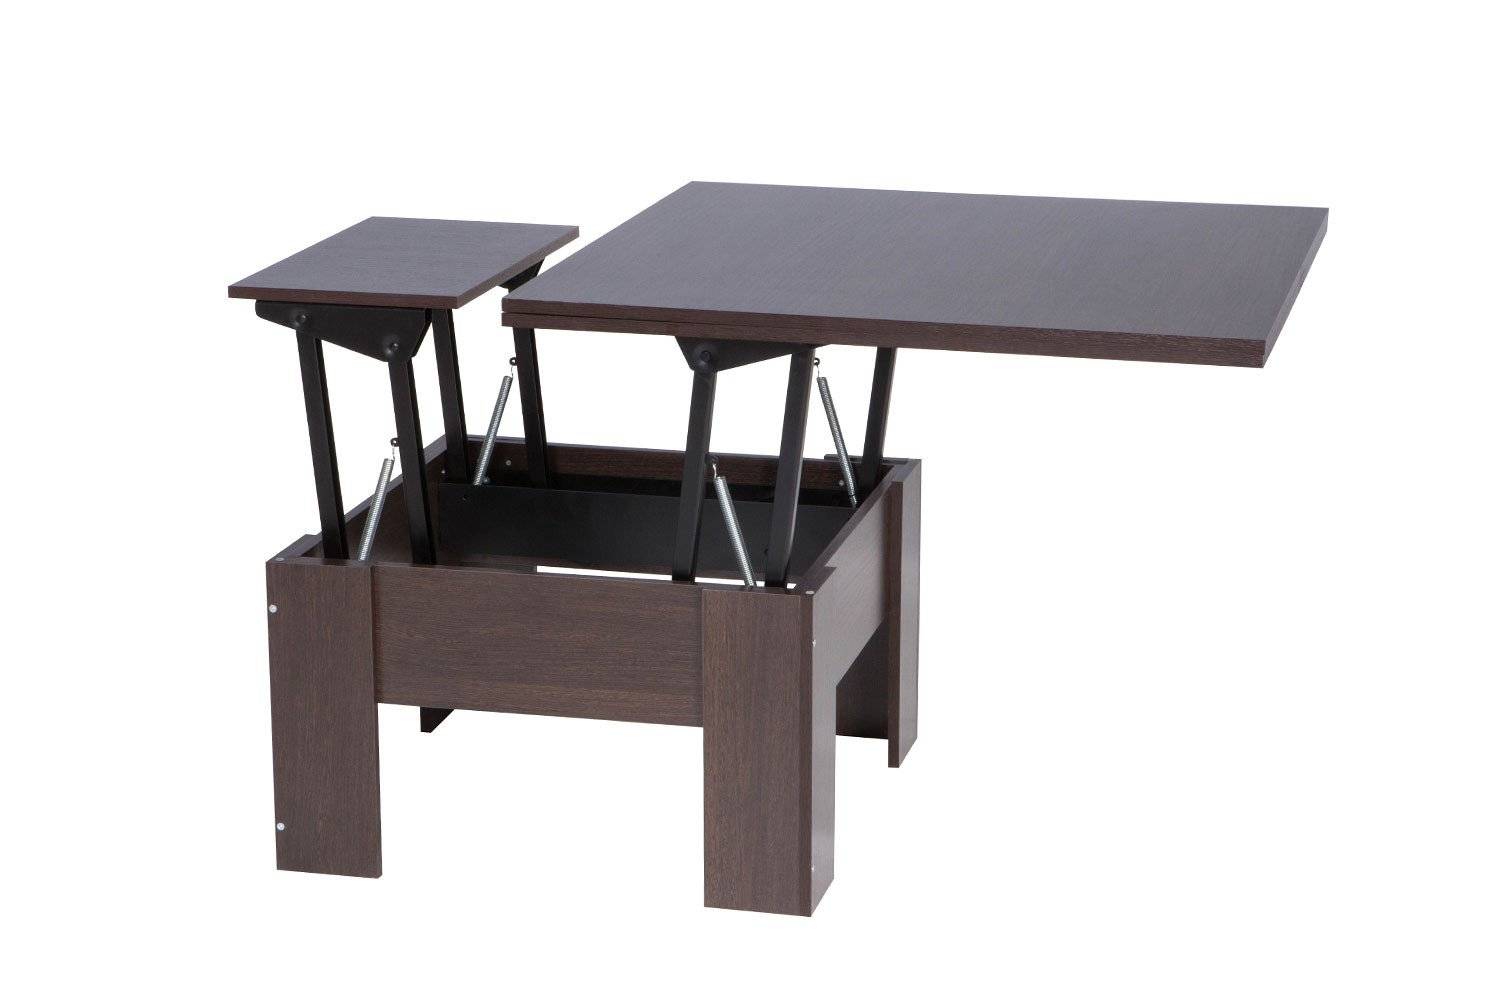 Трансформирующиеся столы — 30 моделей